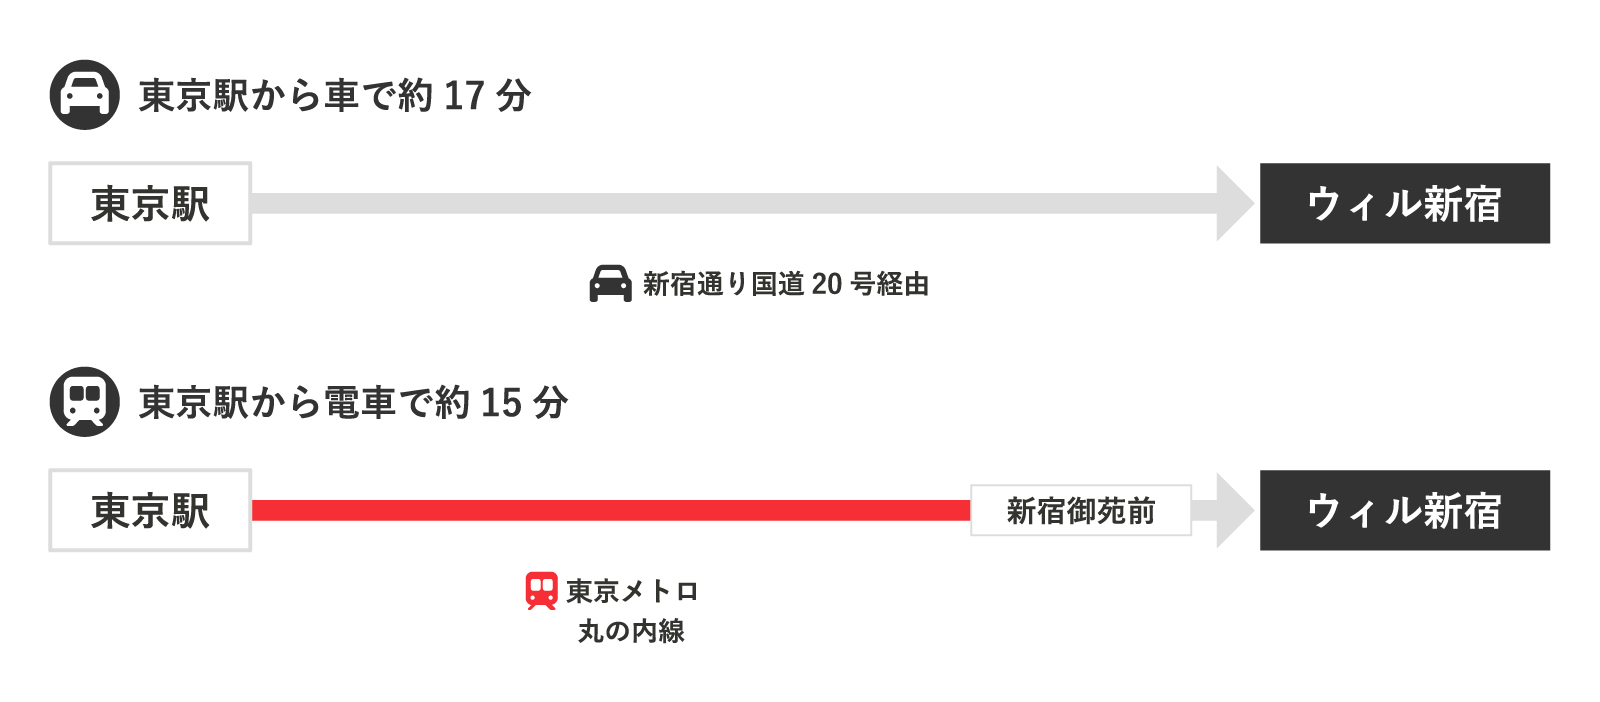 ・車をご利用の場合、東京駅から新宿通り国道20号経由で約17分かかります。 ・電車をご利用の場合、「東京駅」から東京メトロ　丸の内線に乗り、「新宿御苑駅」降車で約22分かかります。